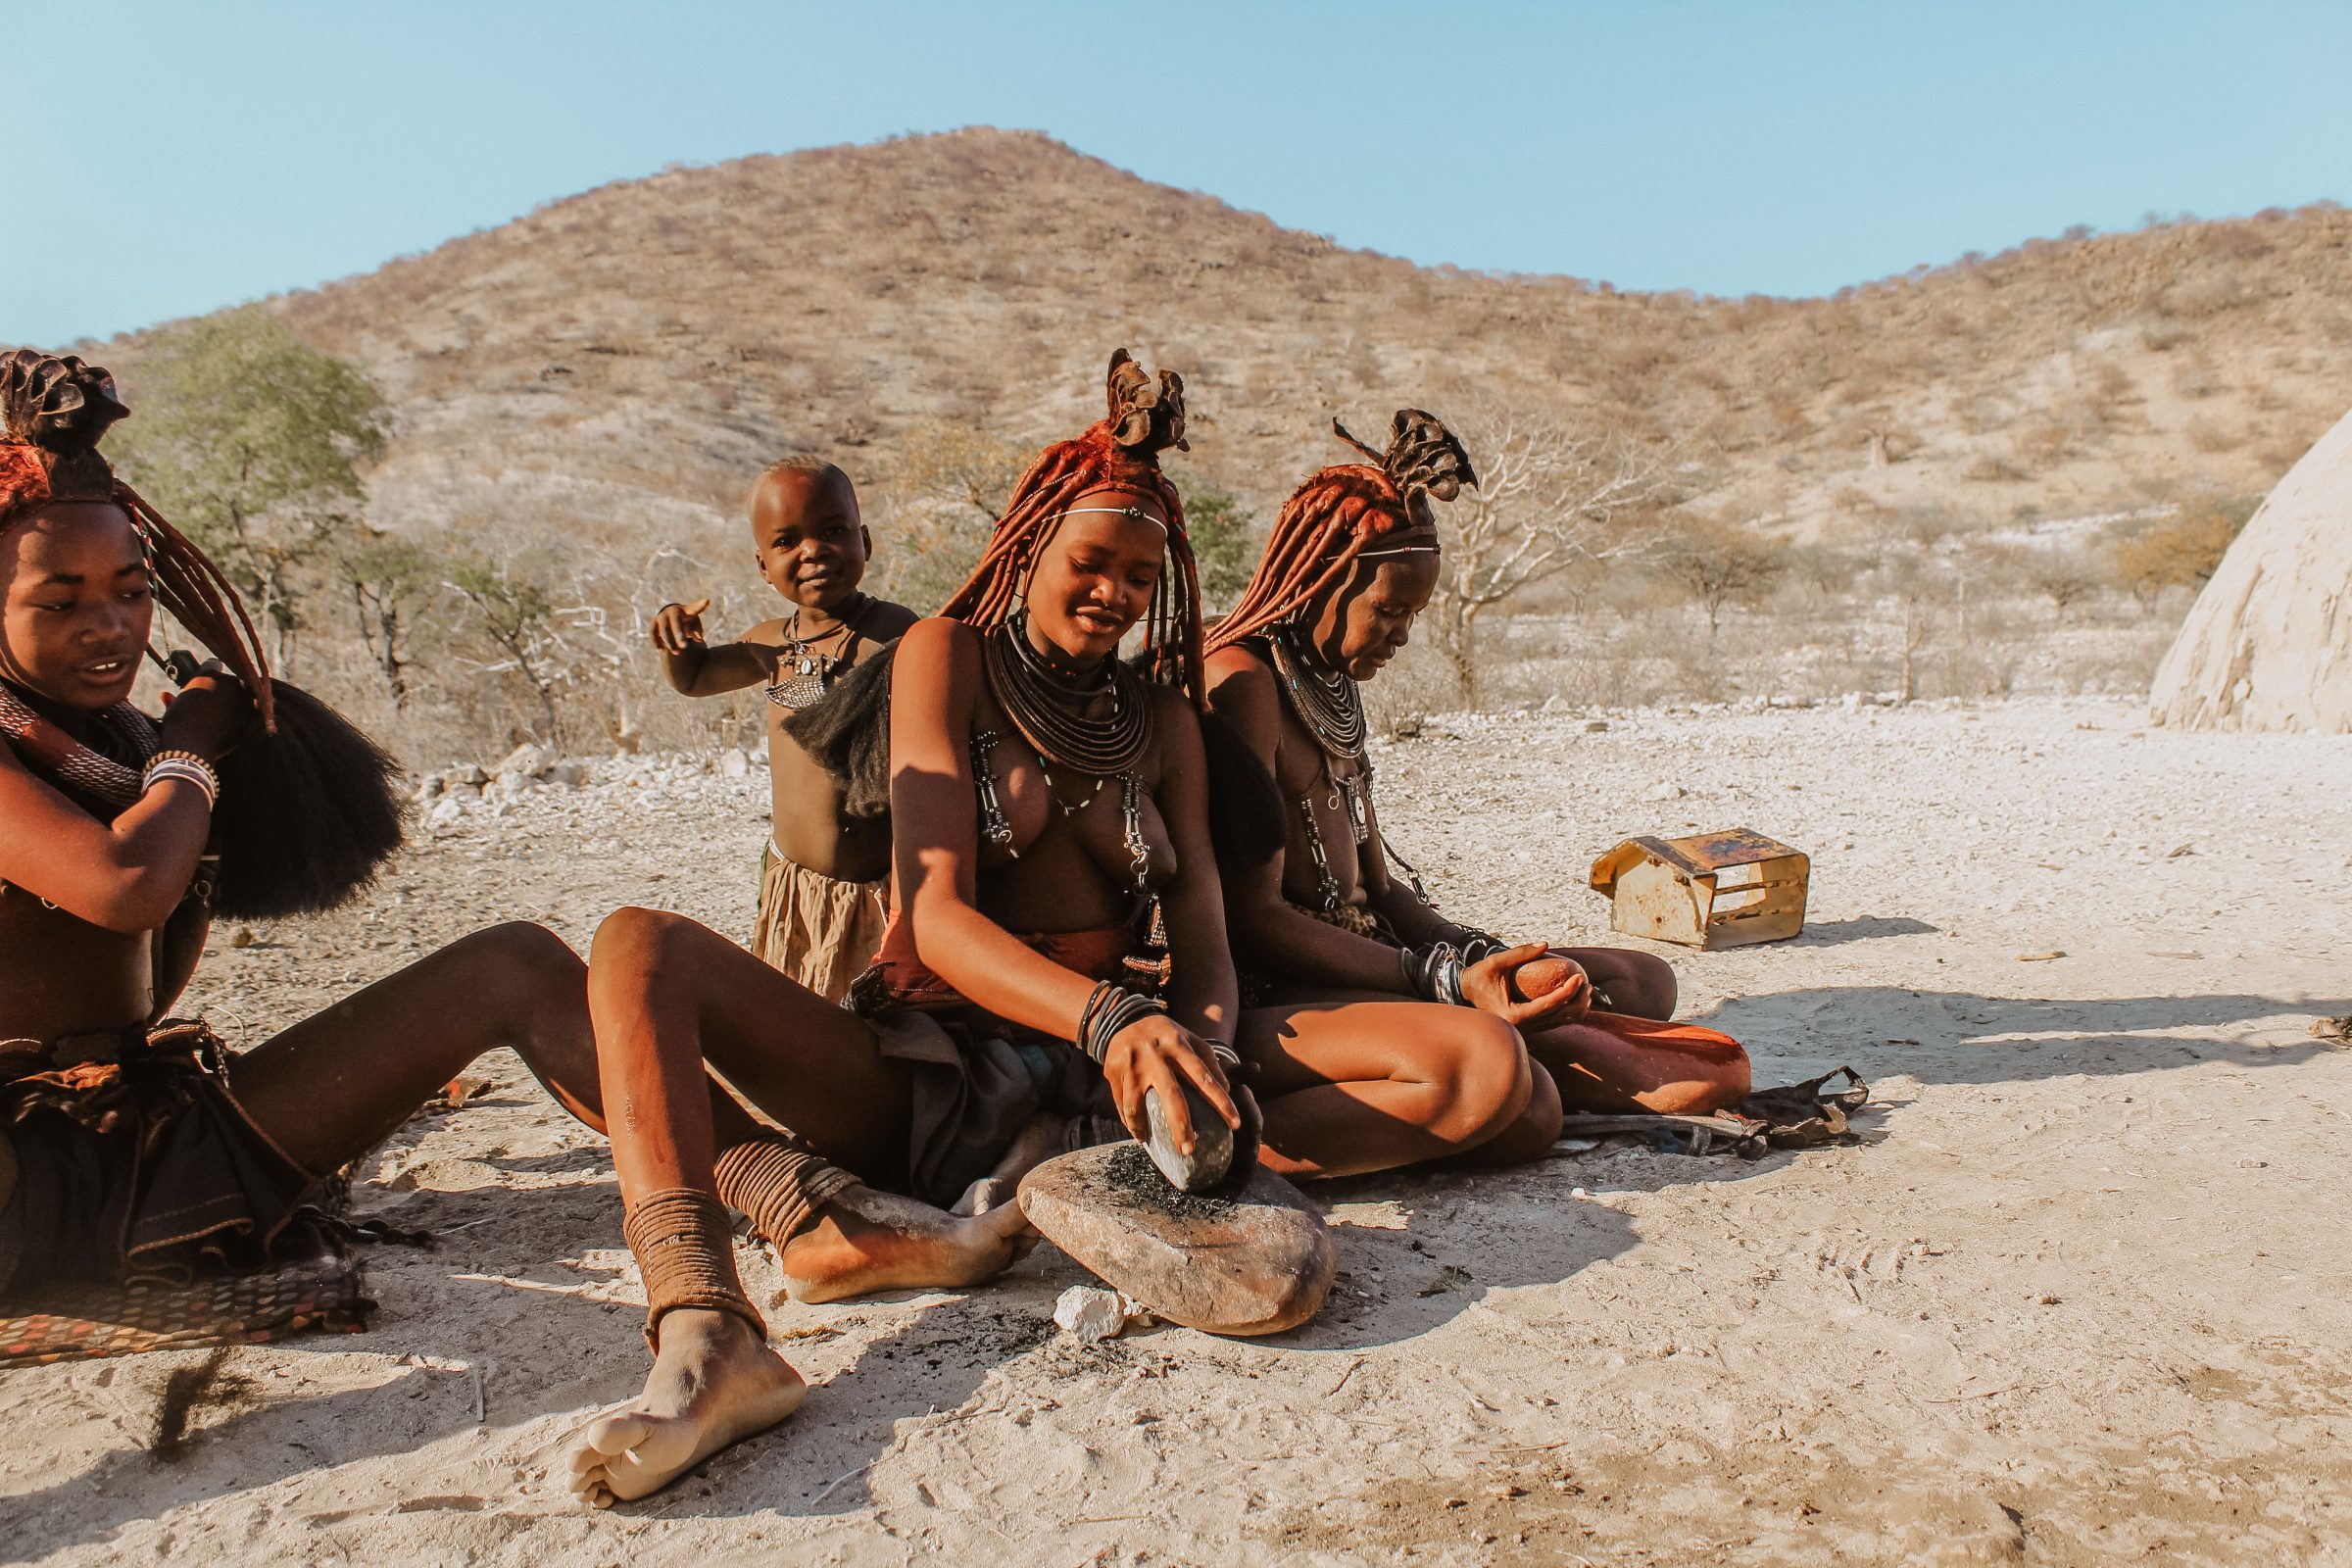 Himba vrouwen met de typische rood/oranje huidskleur door ochre